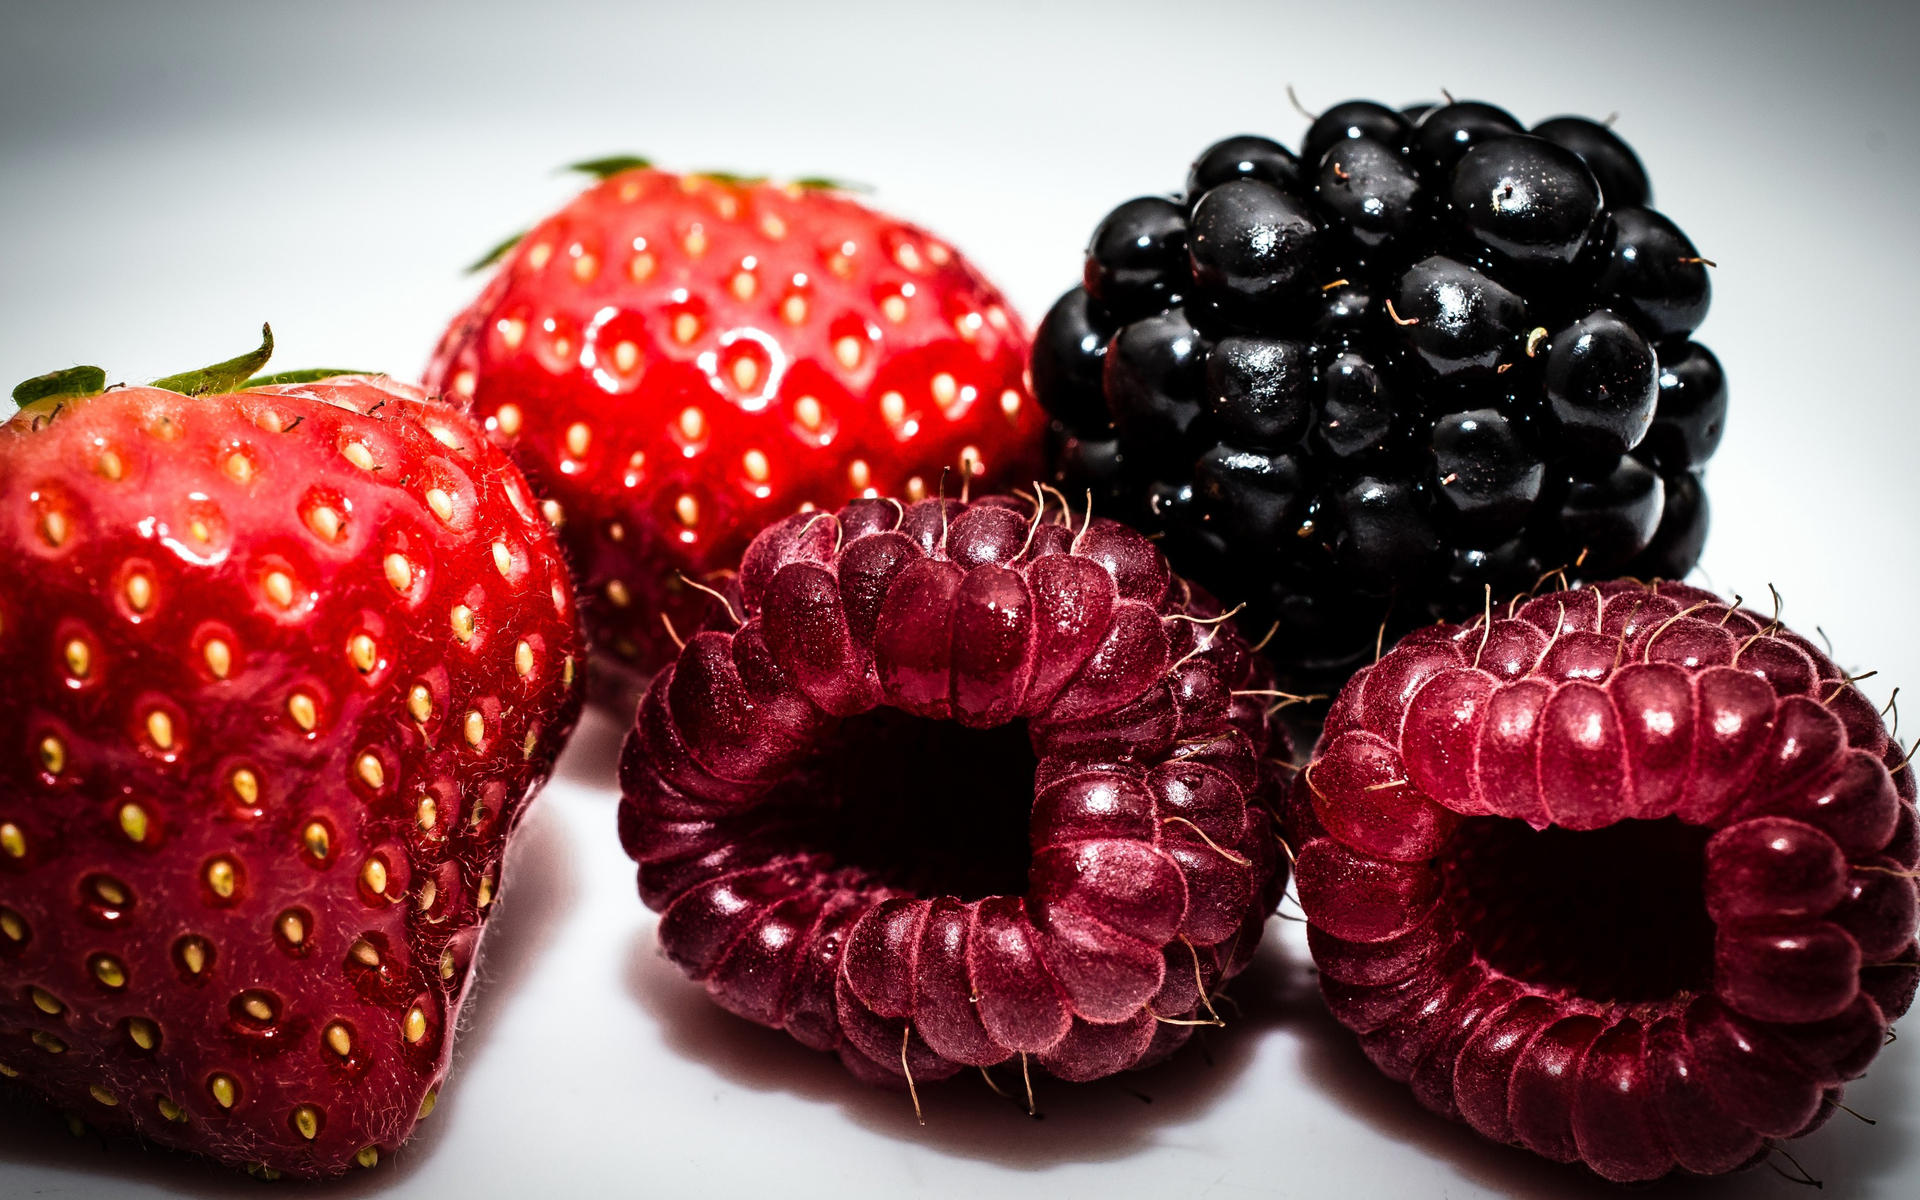 Wallpapers berries strawberries blackberries on the desktop